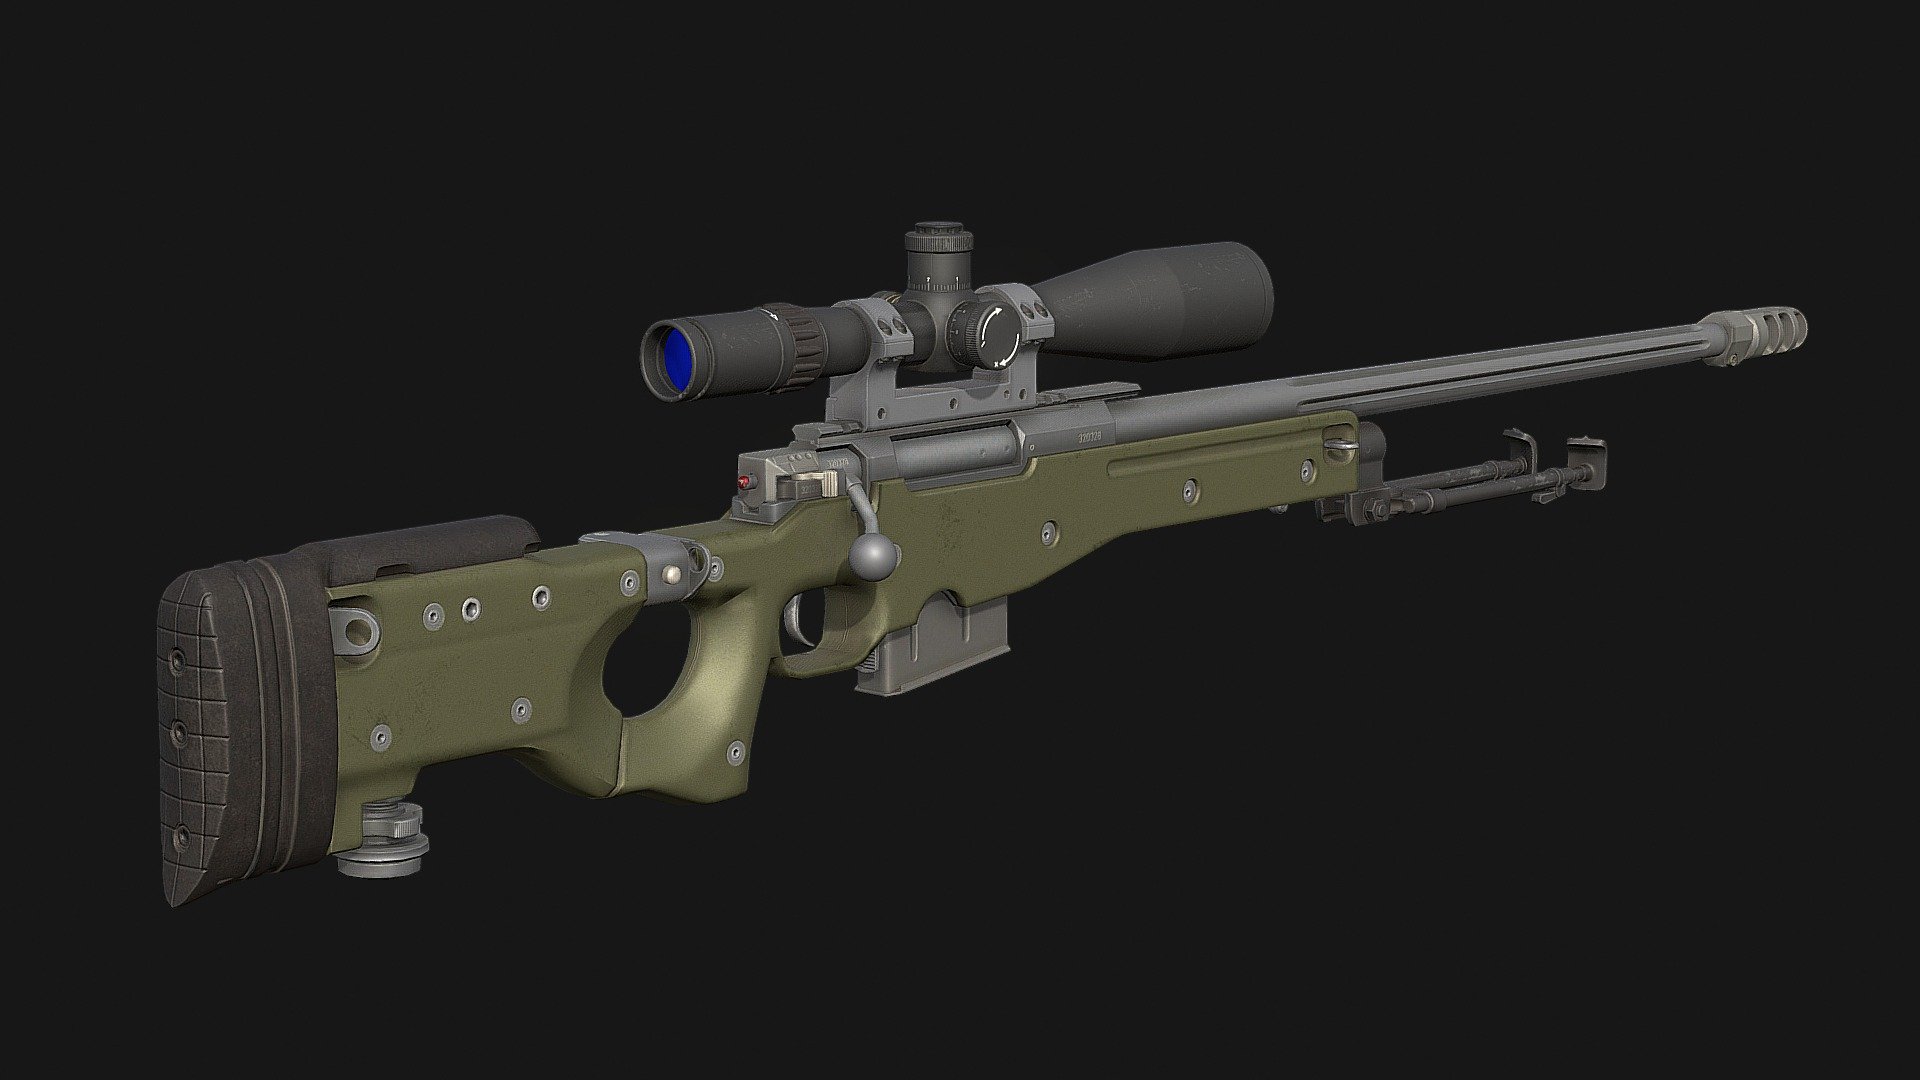 Game Ready Sniper Rifle - Game Ready Sniper Rifle - 3D model by momsboxtv 3d model